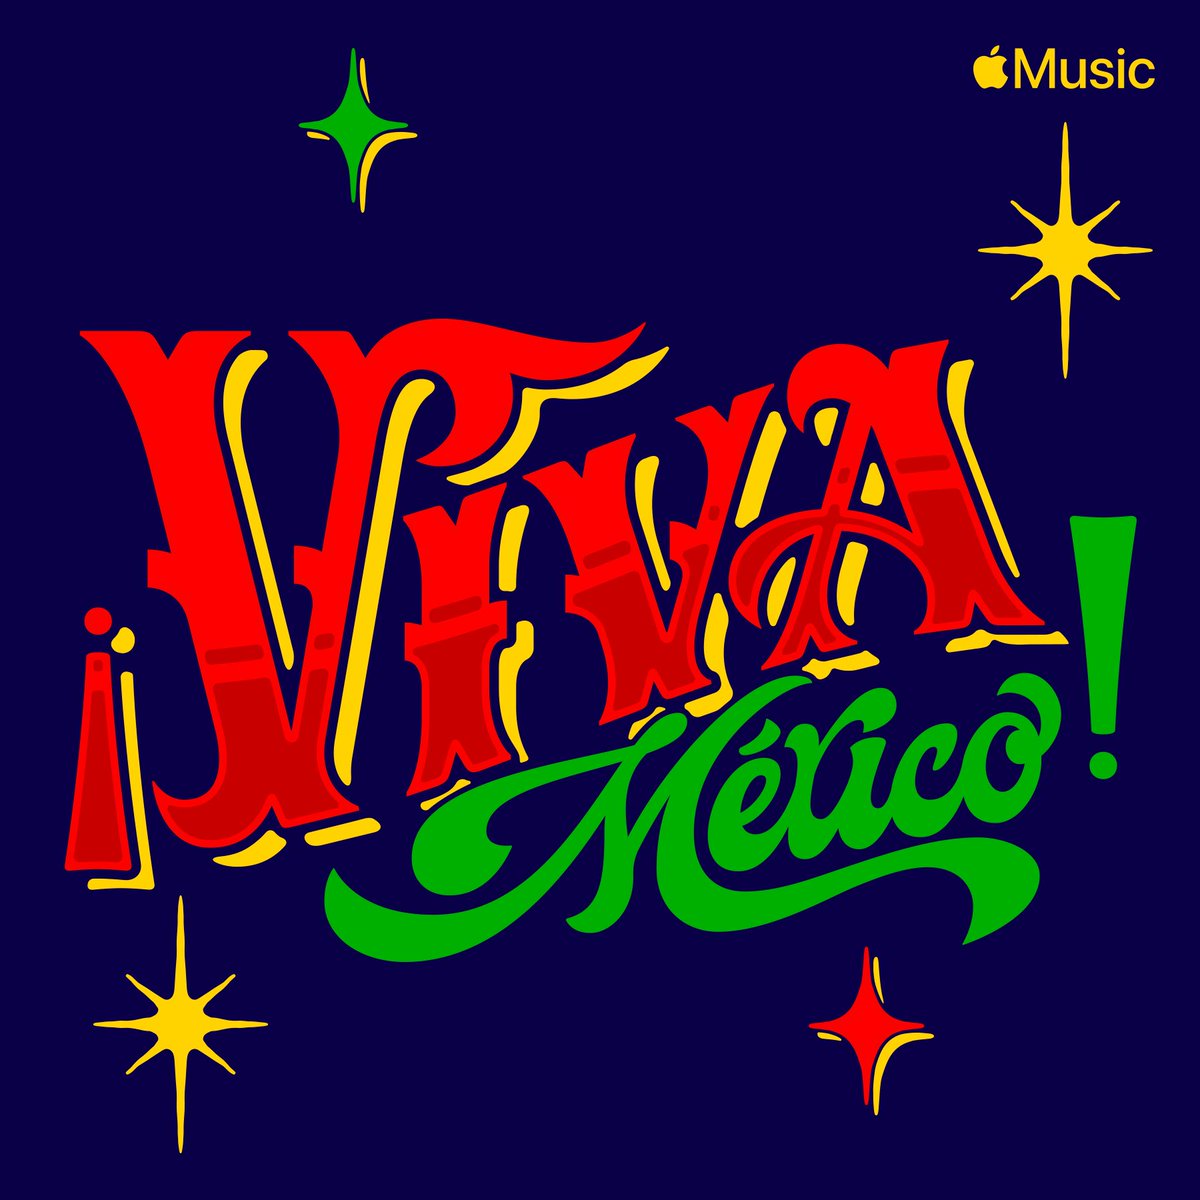 Viva México! 🇲🇽 Estamos de portada en #Imprescindibles de @AppleMusicES con la campaña de #VivaMexicoAppleMusic 🙏🏻 Vayan a escucharla mi gente 🔥🤘🏻 #AppleMusic 🍏 apple.co/VivaMexico